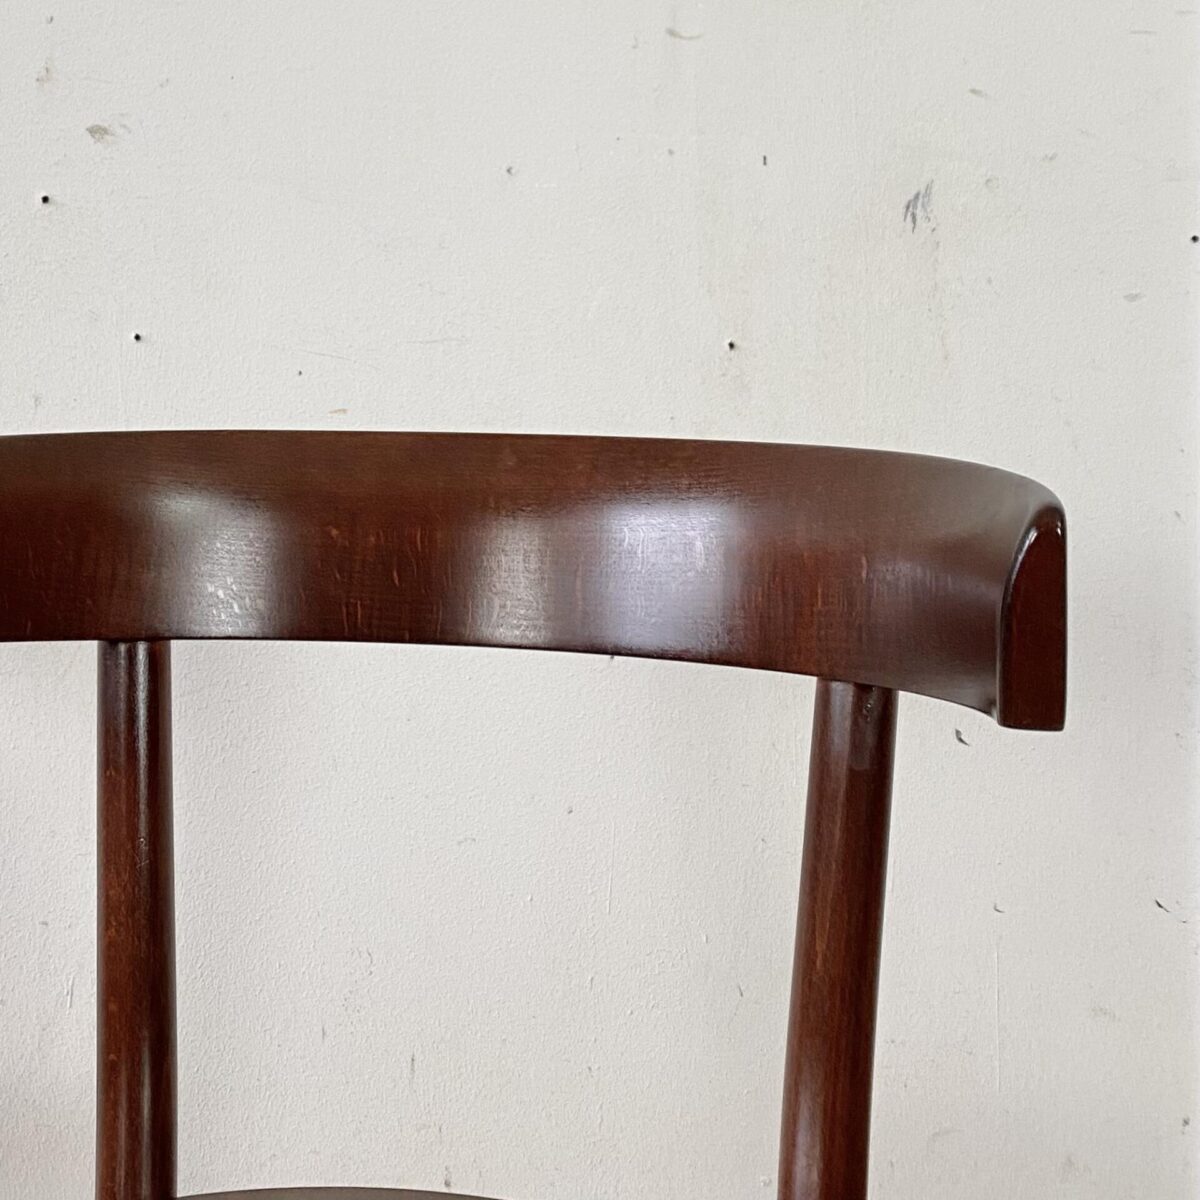 Deuxieme.shop Max Moser Stuhl swissdesign. Horgen Glarus Stühle Select 1-370 von Werner Max Moser. Herstellungsjahr 2016 der Preis gilt pro Stuhl. Die Stühle sind in gutem stabilen Zustand, mit minimalen Gebrauchsspuren. Die Stühle sind aus Buche Vollholz Dampfgebogen, die Sitzfläche mit Mulde aus Sperrholz. Die Holz Oberflächen sind gebeizt und lackiert. 